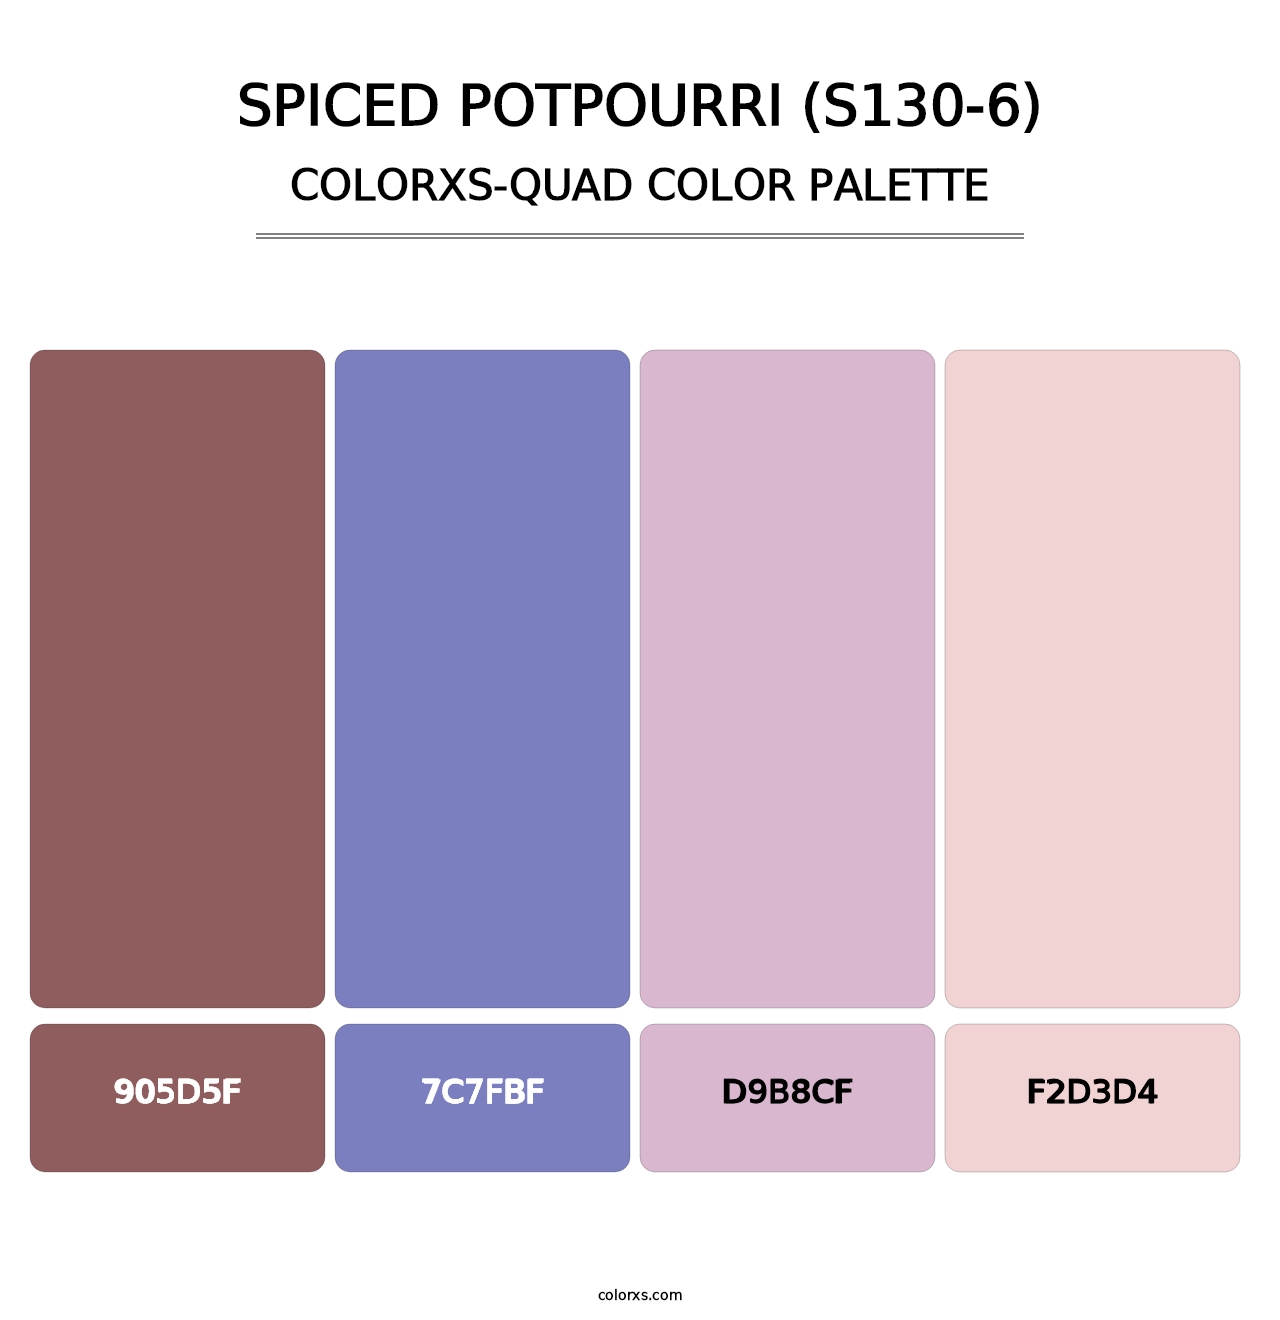 Spiced Potpourri (S130-6) - Colorxs Quad Palette